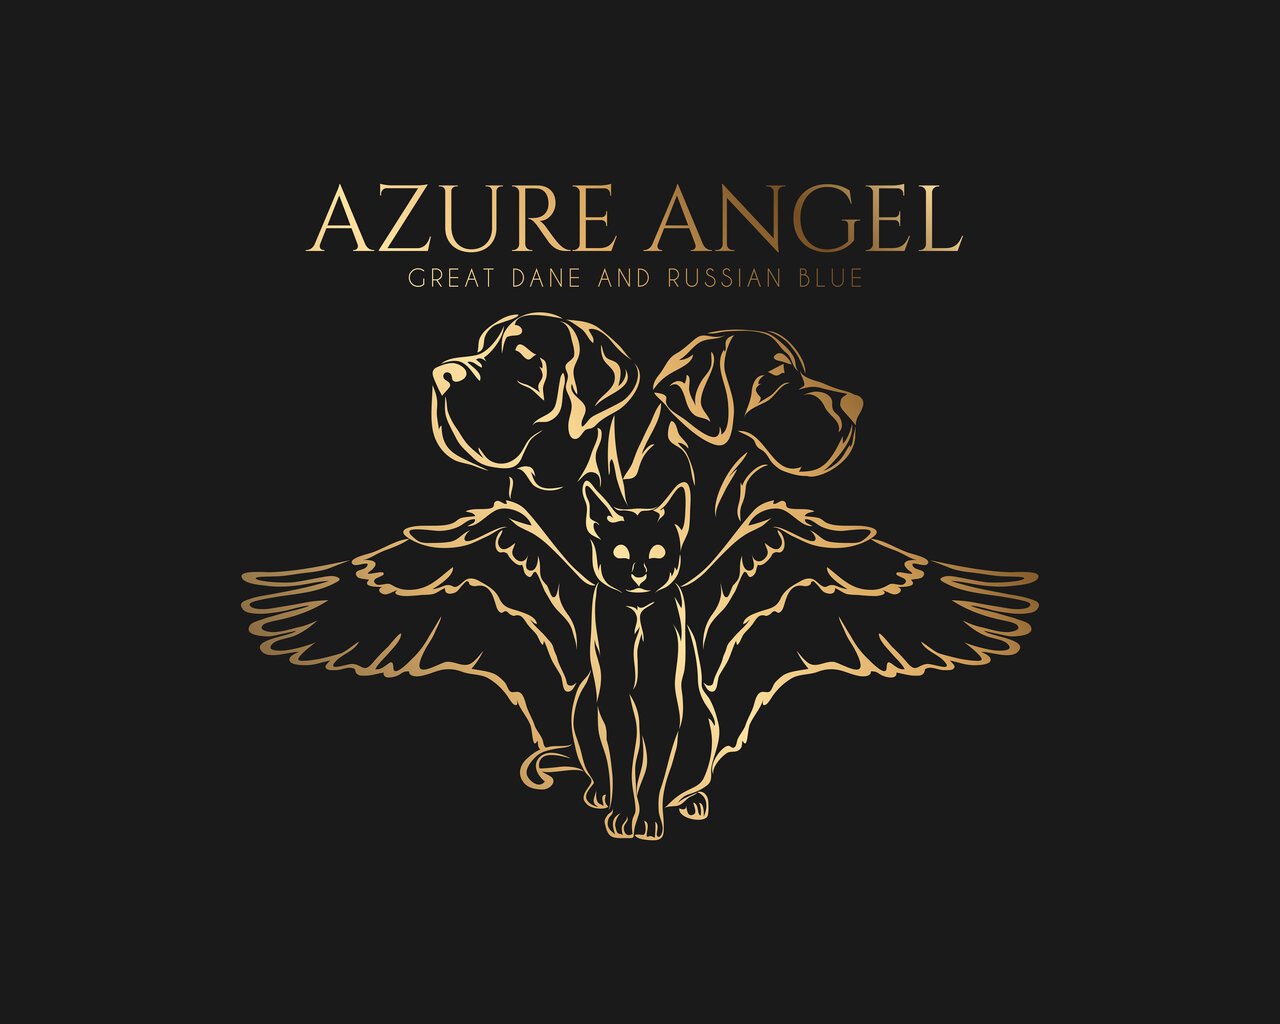 AZURE ANGEL Promoted breeding centres – WORLDPETNET #12